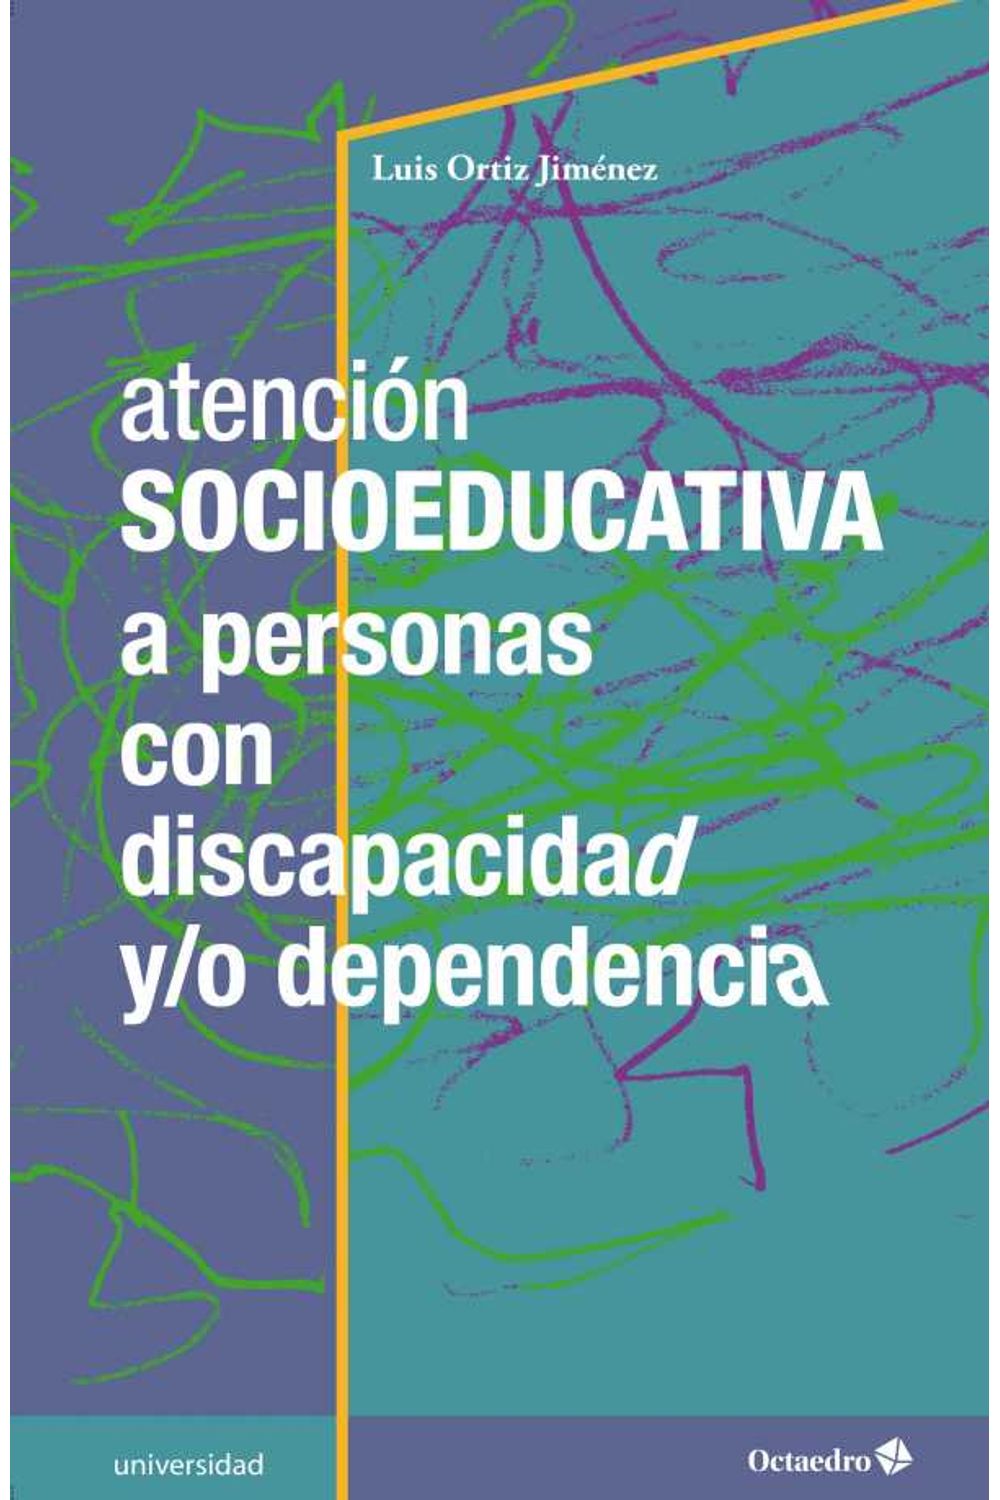 bw-atencioacuten-socioeducativa-a-personas-con-discapacidad-yo-dependencia-ediciones-octaedro-9788417219796